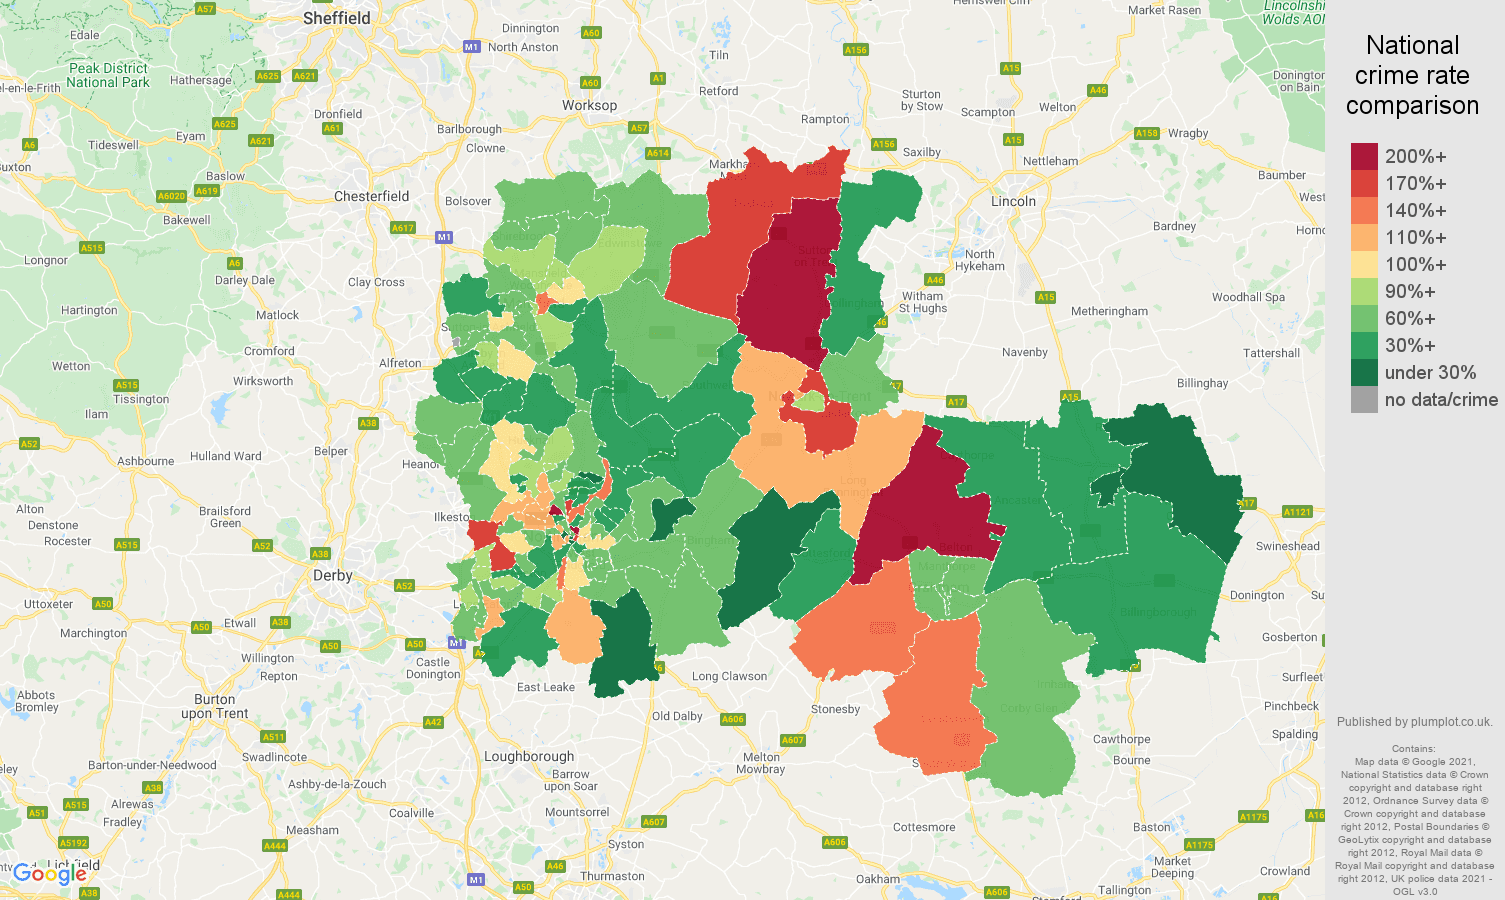 Nottingham vehicle crime rate comparison map